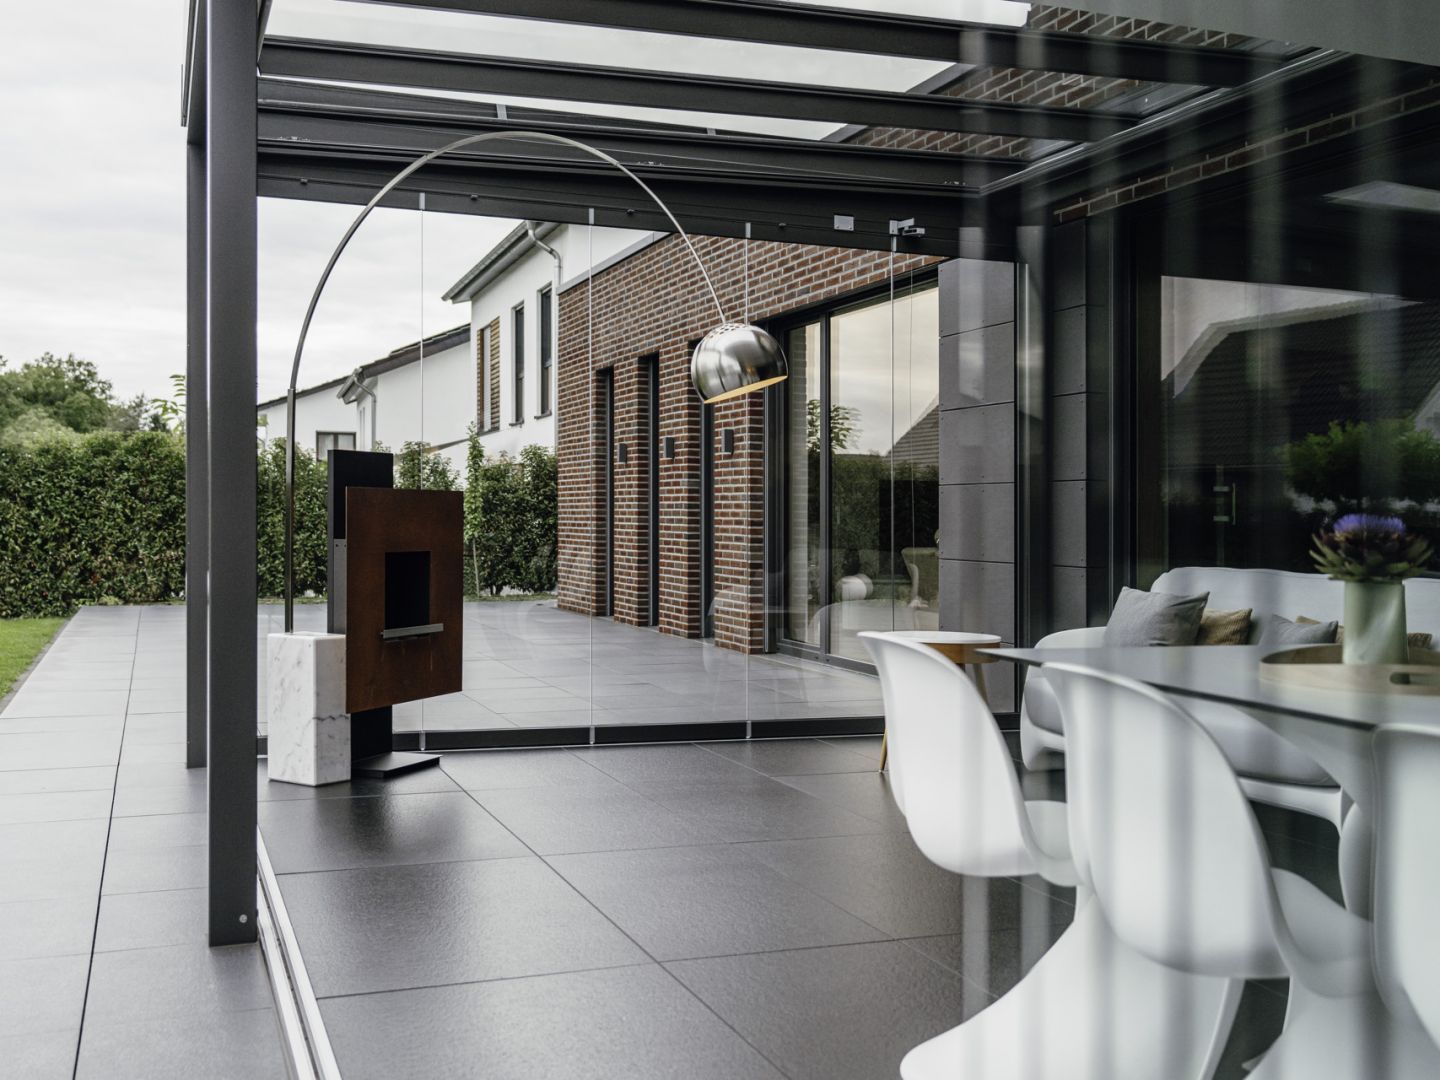 Die transparente Hülle schützt vor Wind und Wetter, das gilt für die Bewohner sowie die Möbel unter dem Glasdach.   Bildnachweis: Malik Pahlmann für Solarlux GmbH